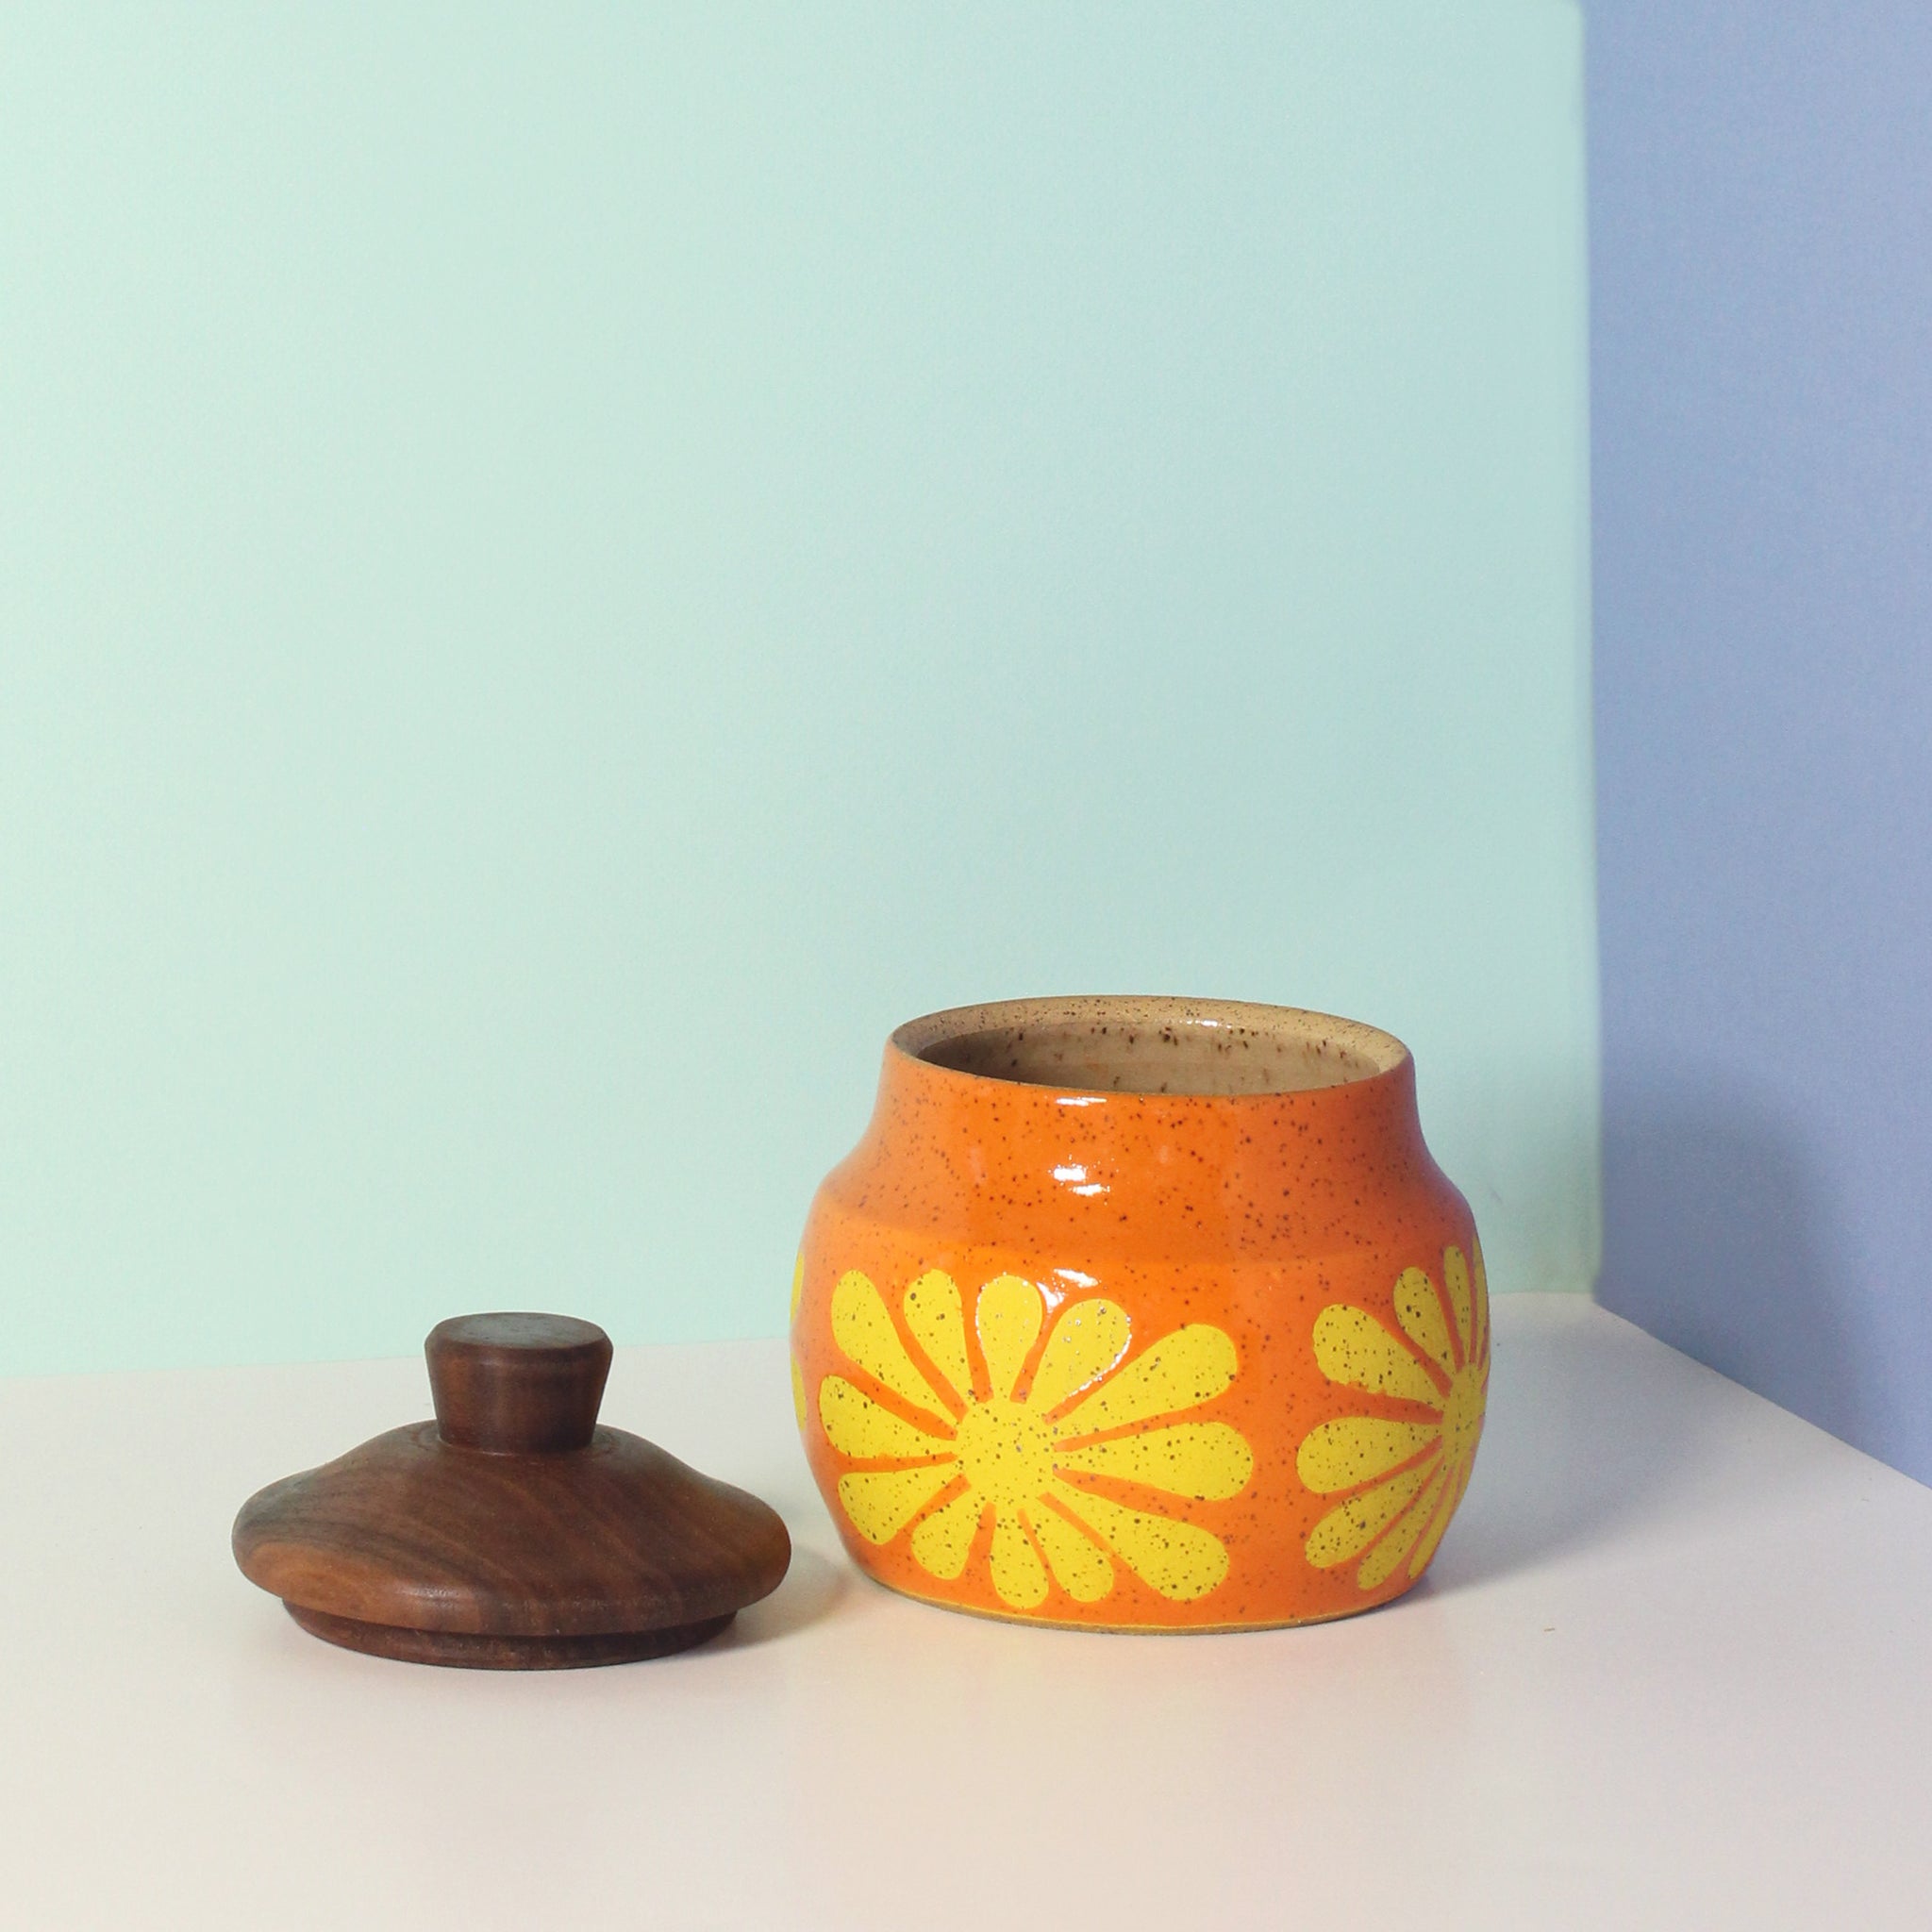 Glazed Stoneware Jar with Mod Flower Pattern